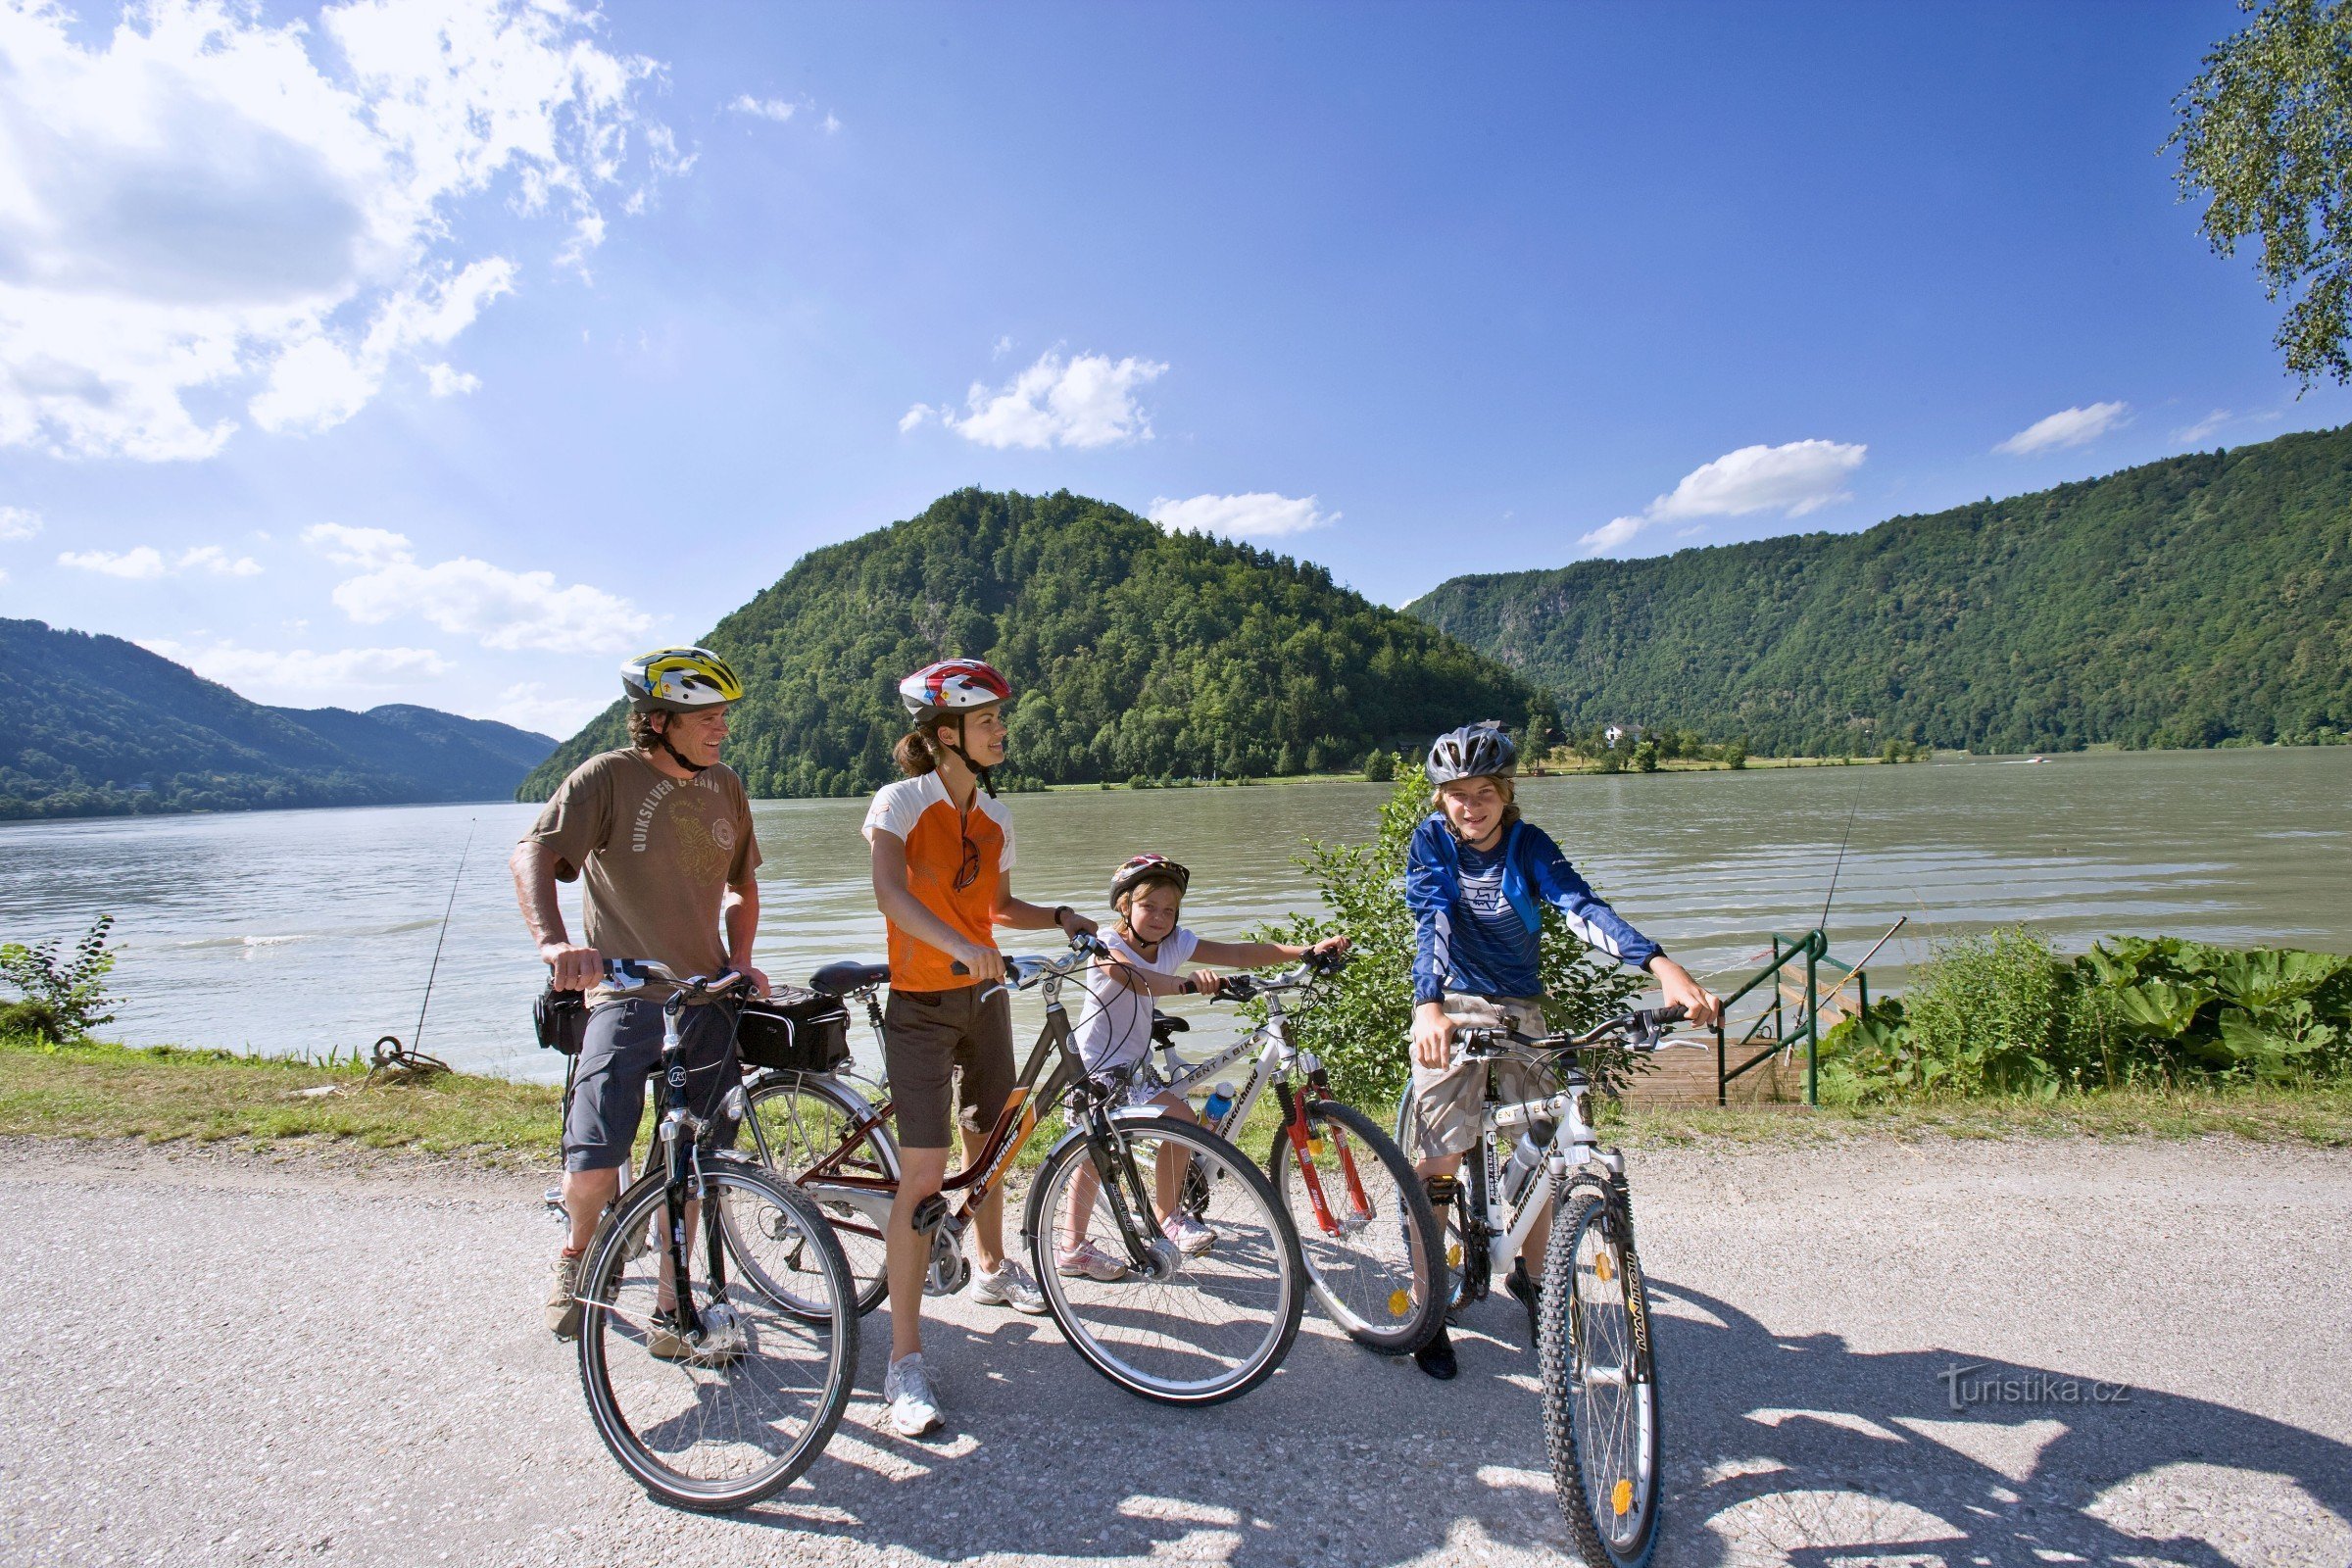 Les familles avec enfants apprécieront également la piste cyclable du Danube